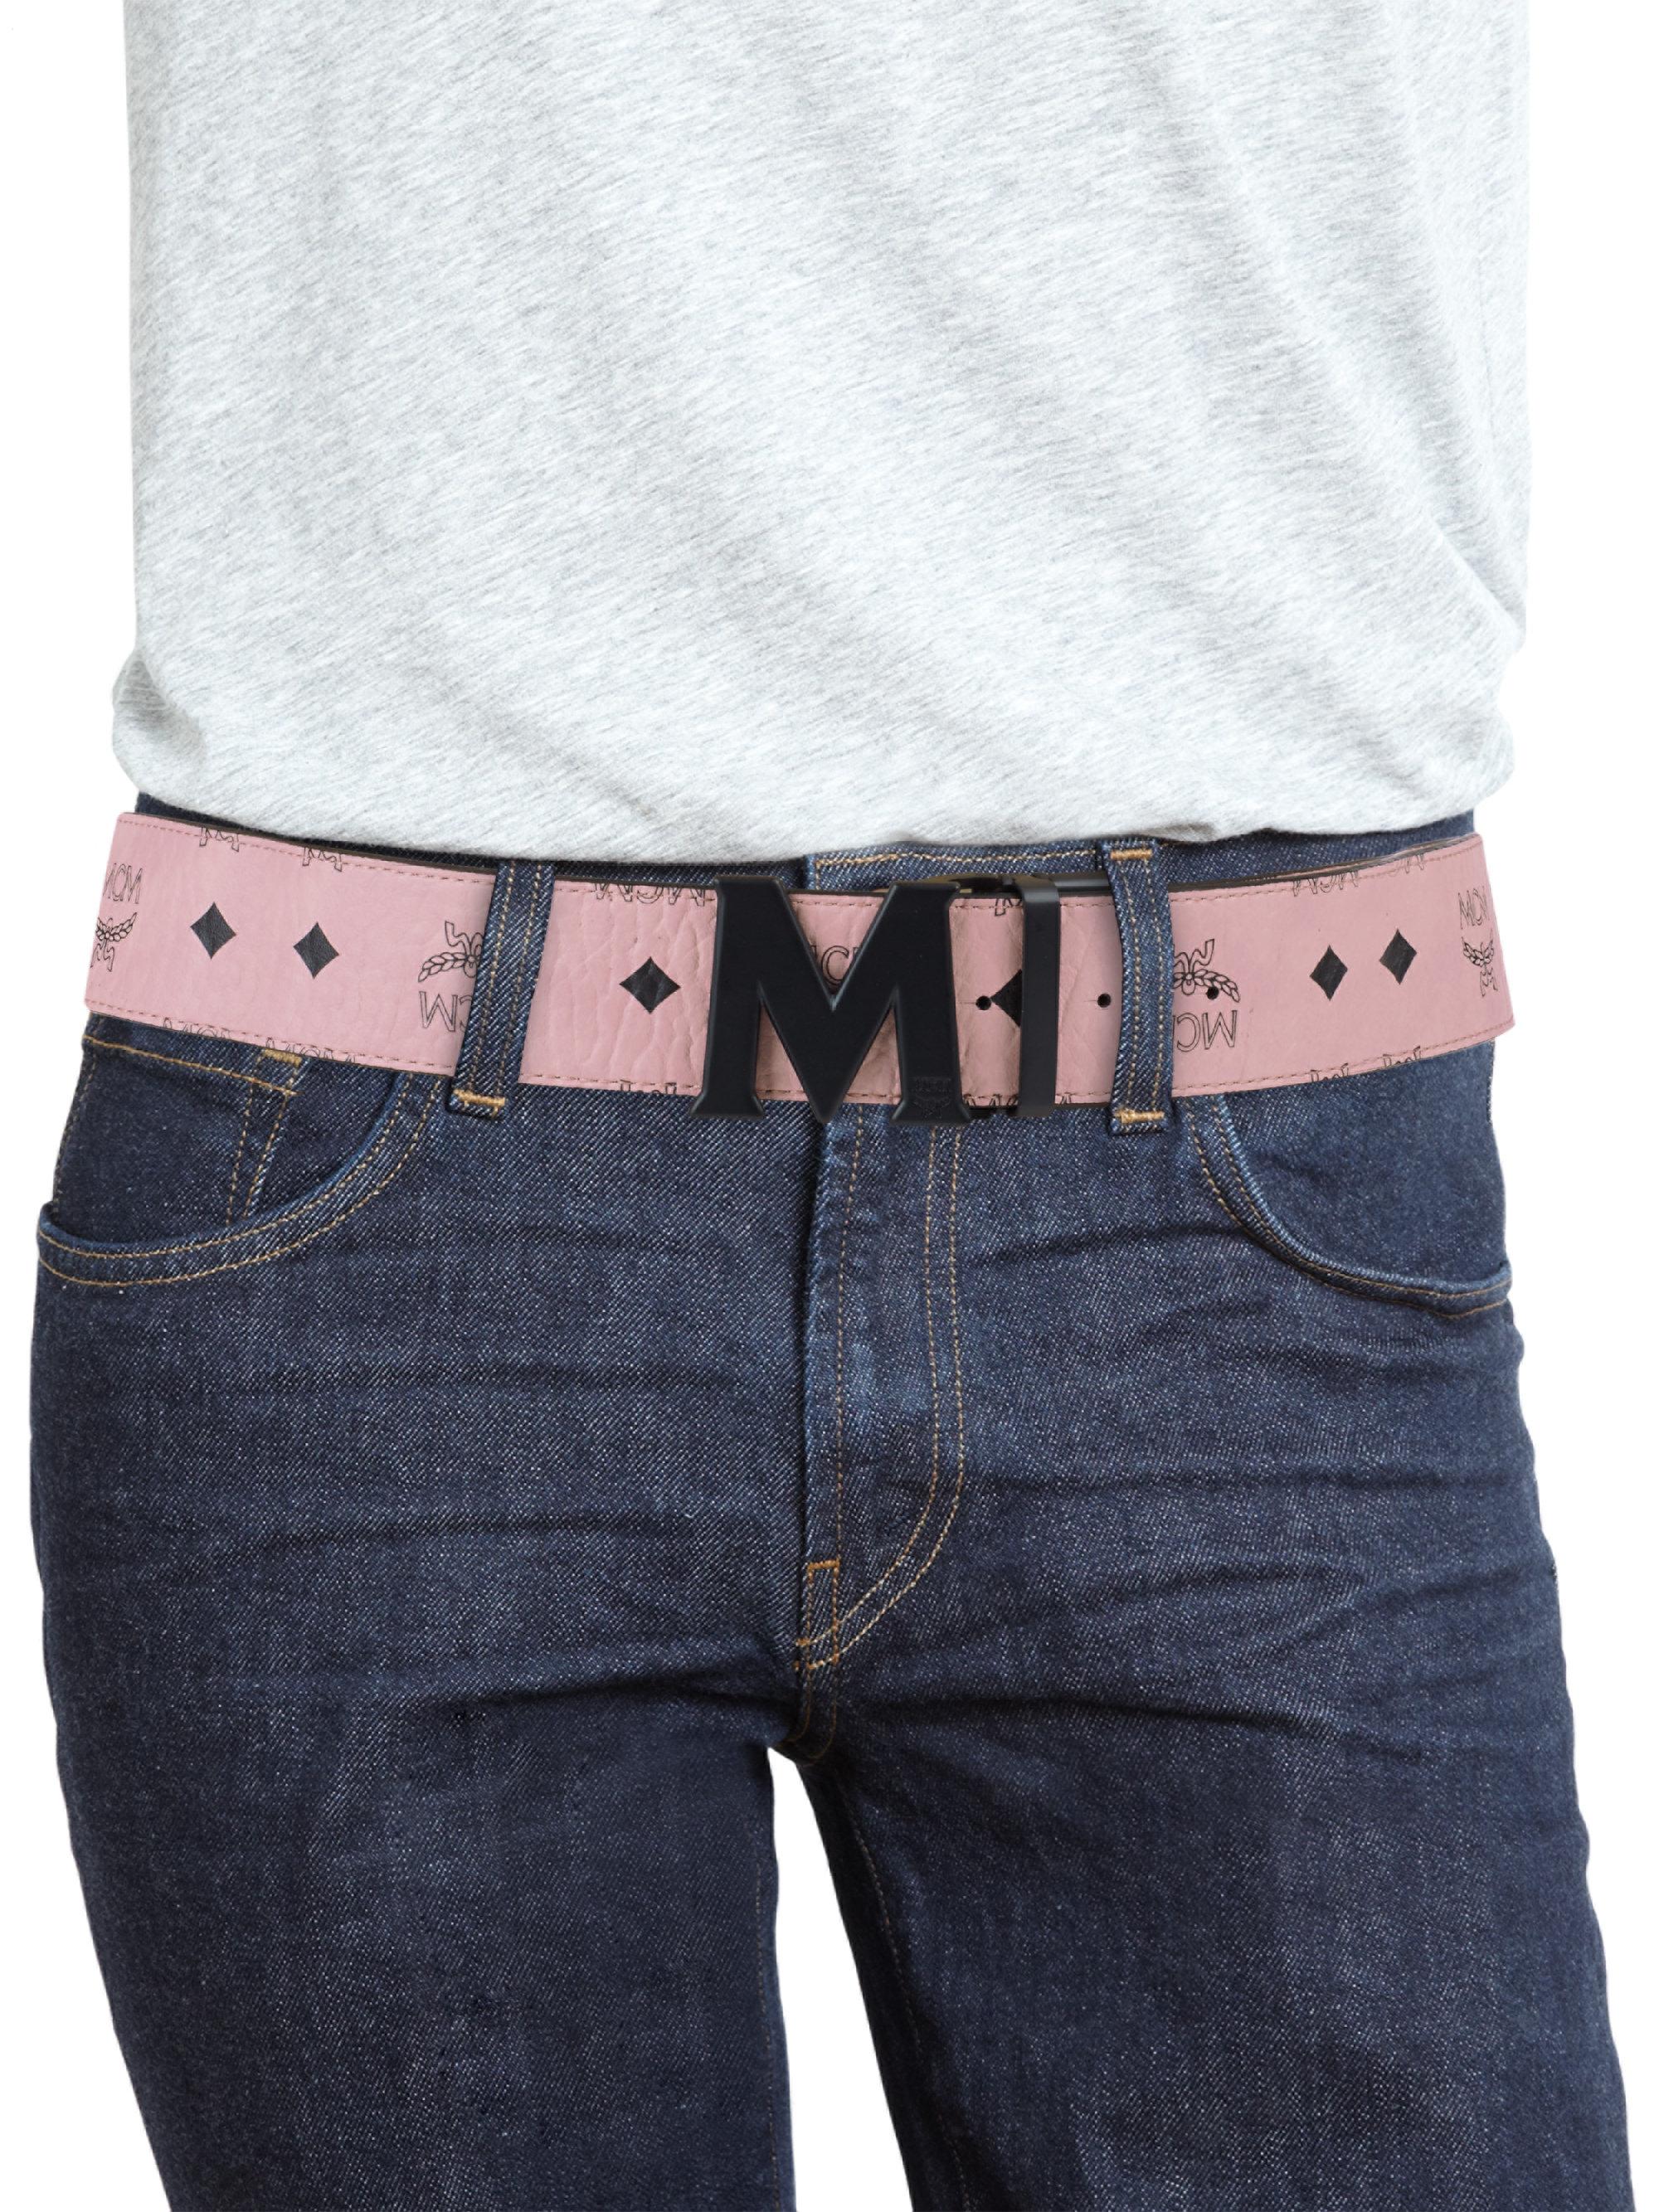 MCM Canvas Logo Belt for Men - Lyst